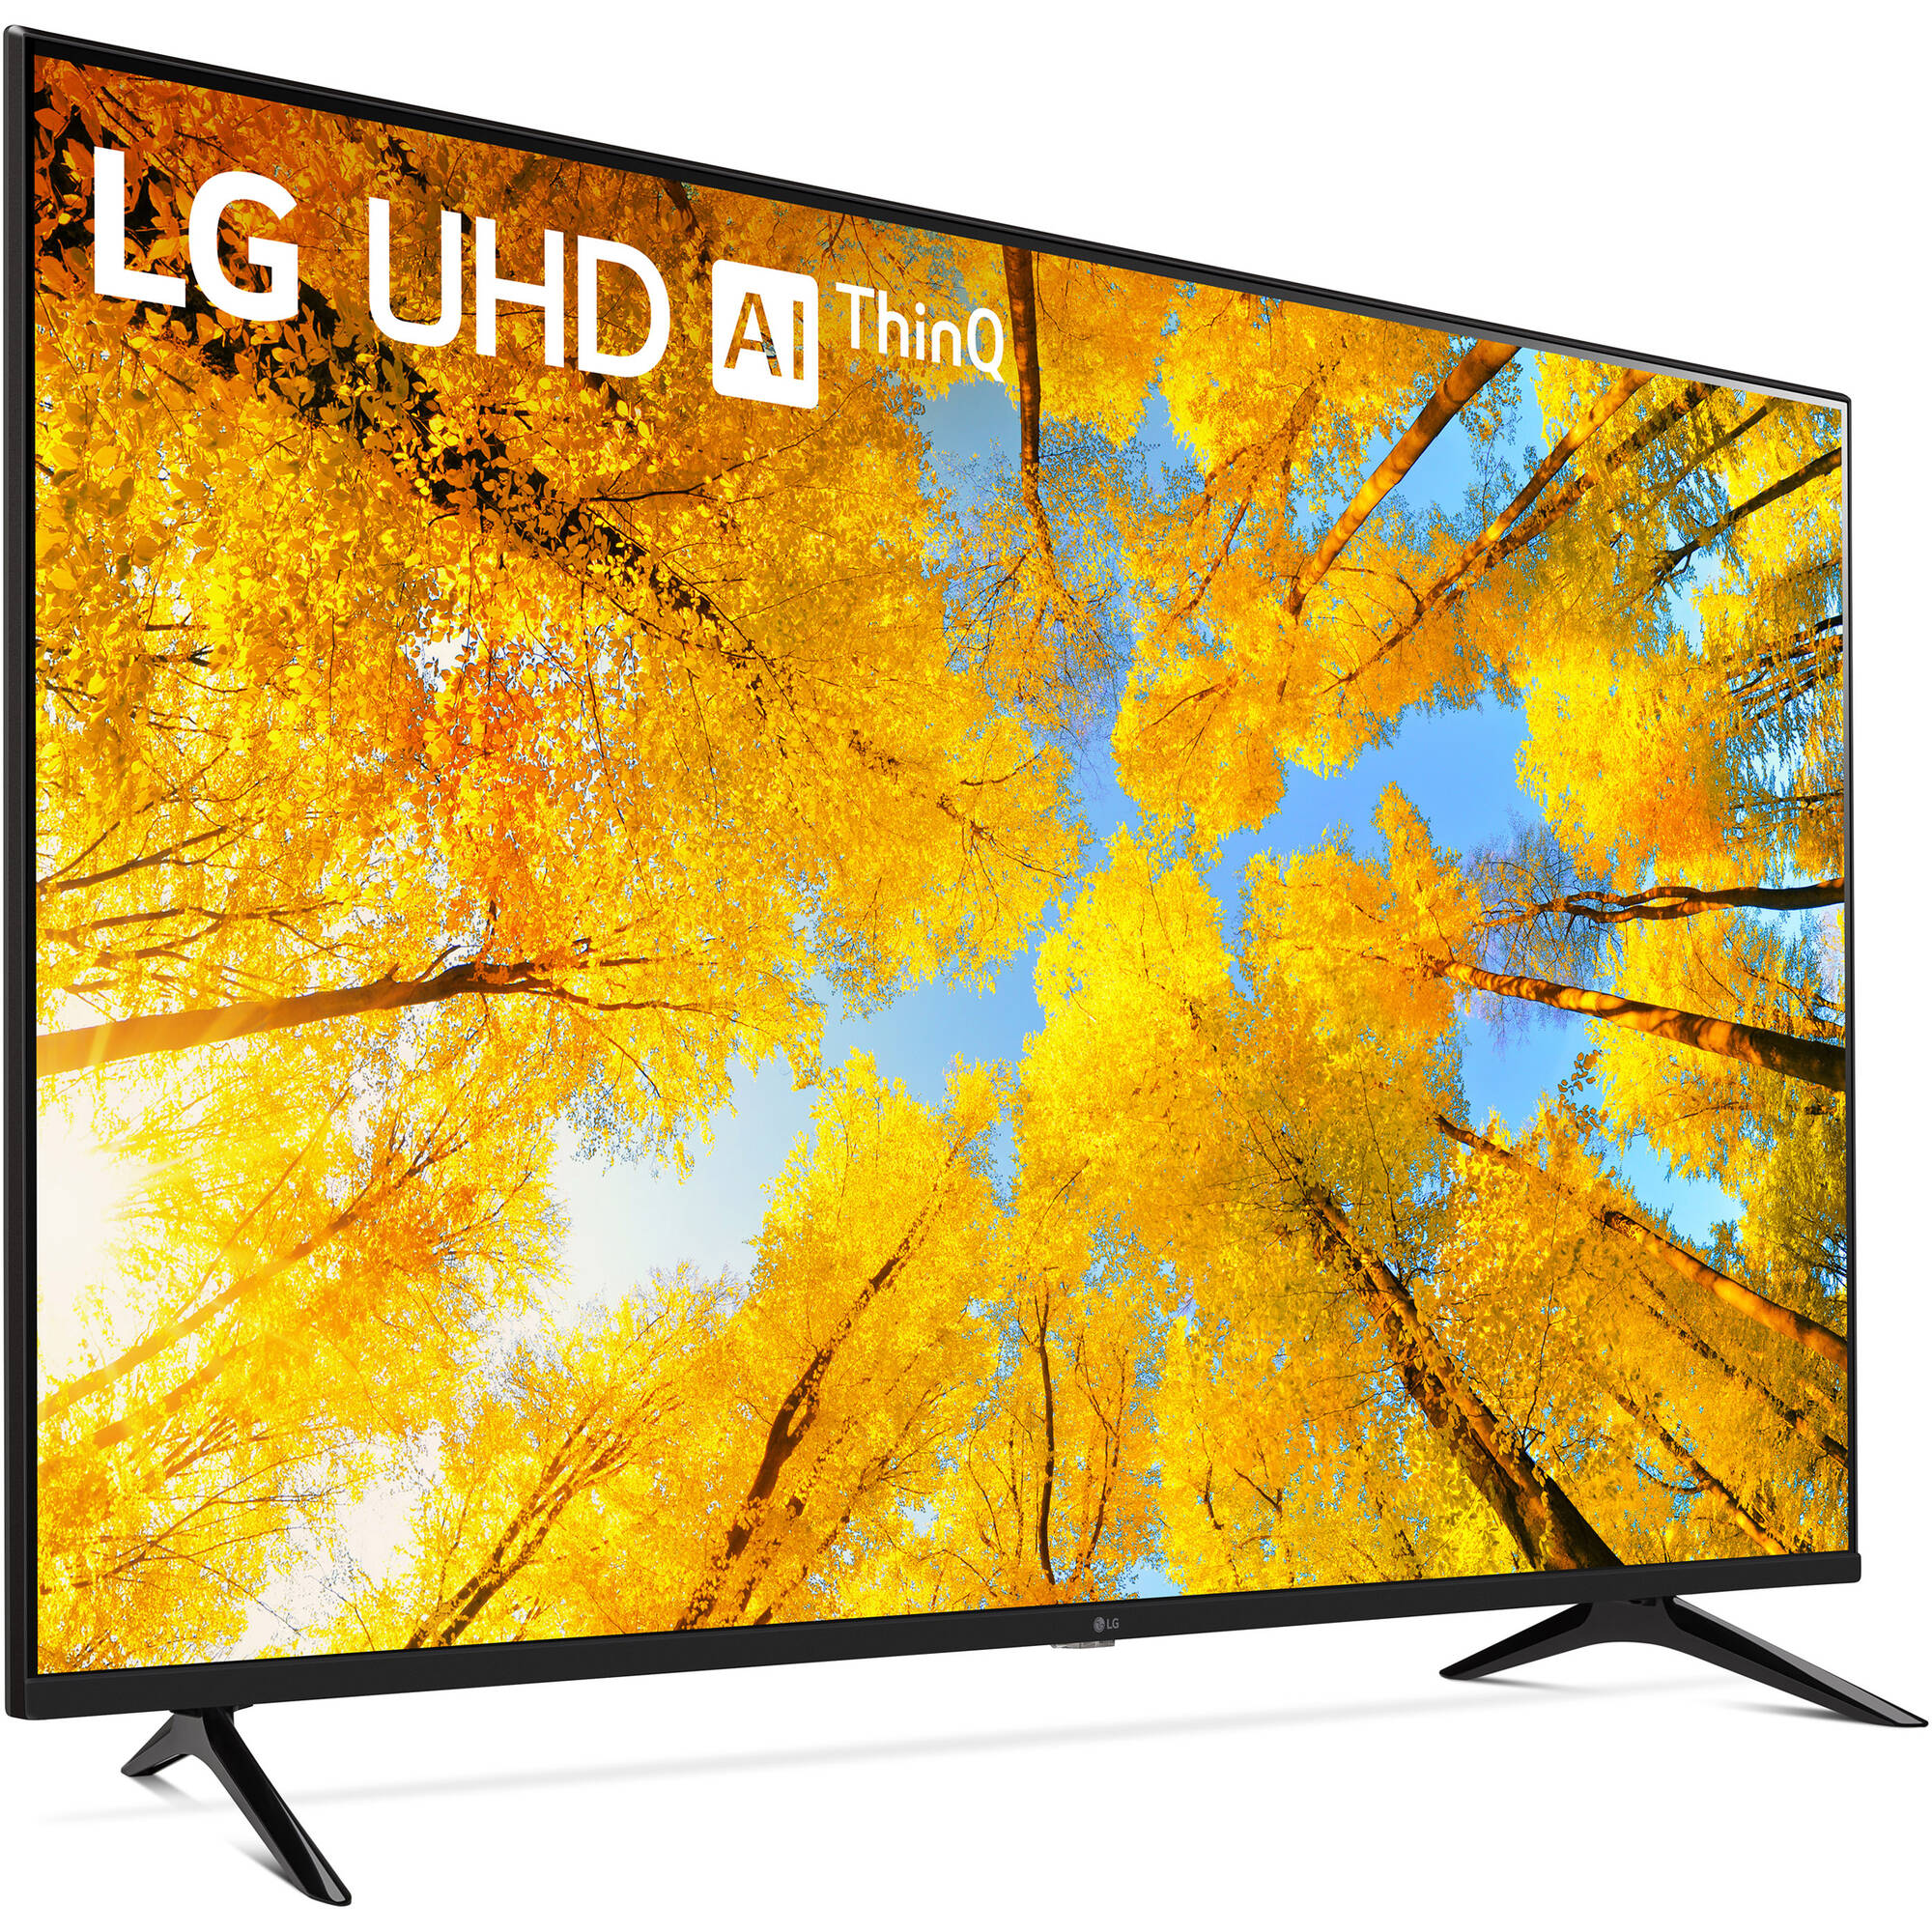 LG UQ7570PUJ 65 "4K HDR Smart LED TV